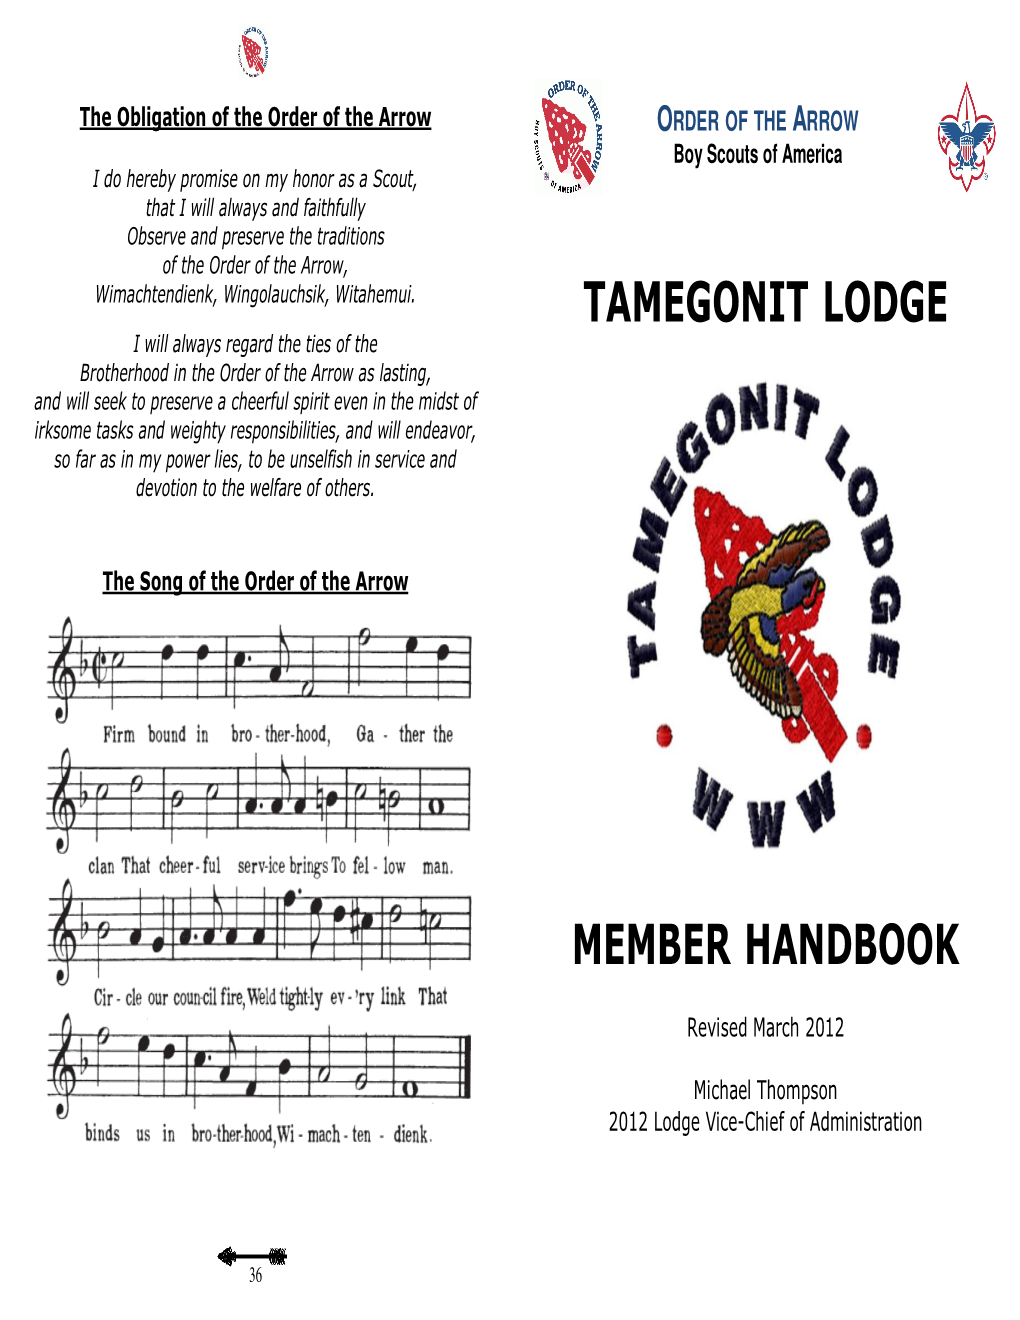 Tamegonit Lodge Handbook Pamphlet